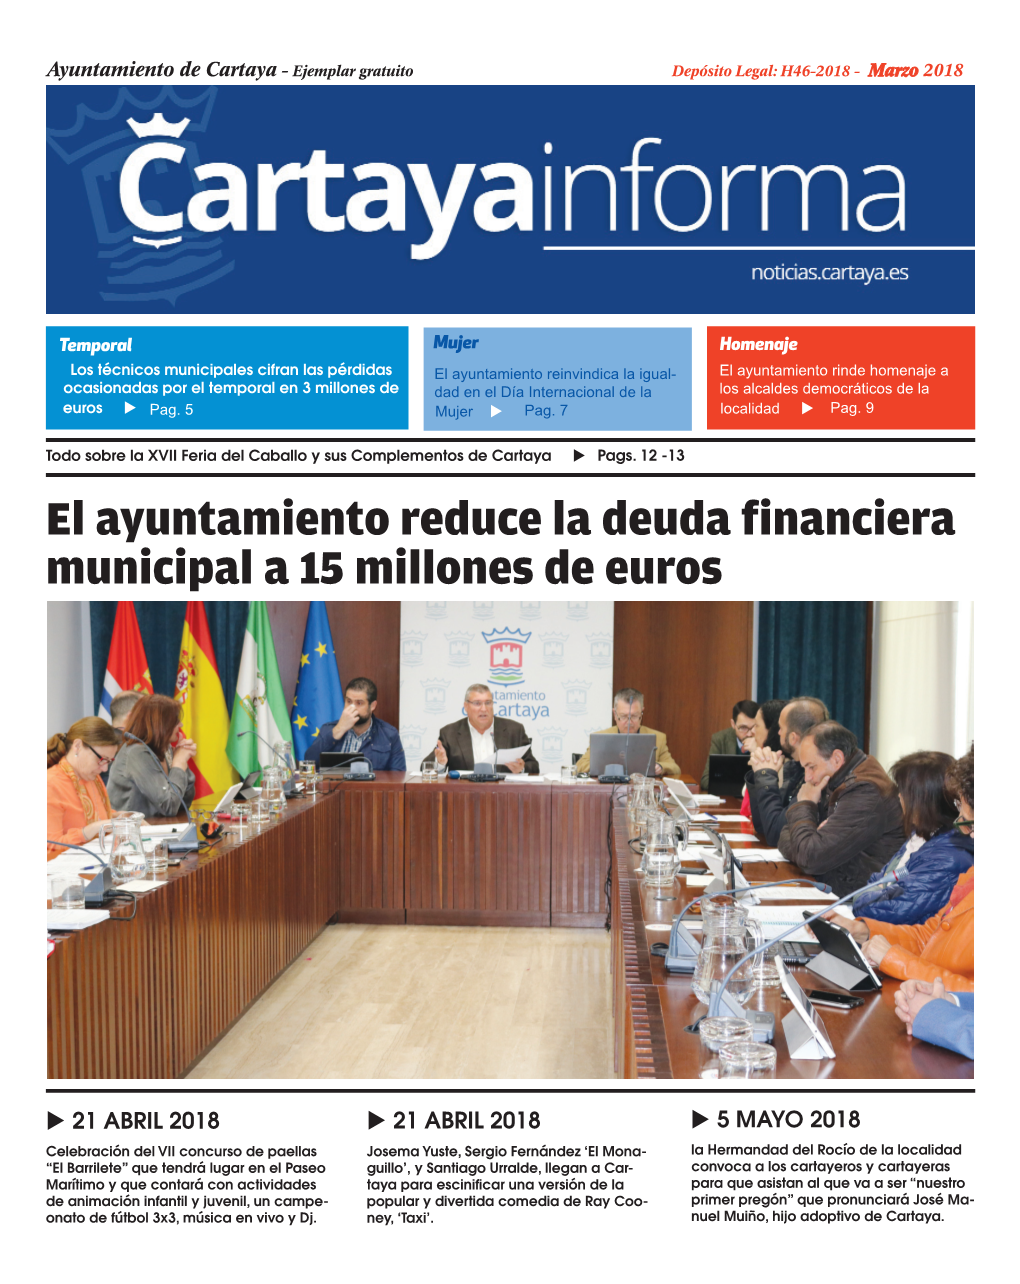 El Ayuntamiento Reduce La Deuda Financiera Municipal a 15 Millones De Euros